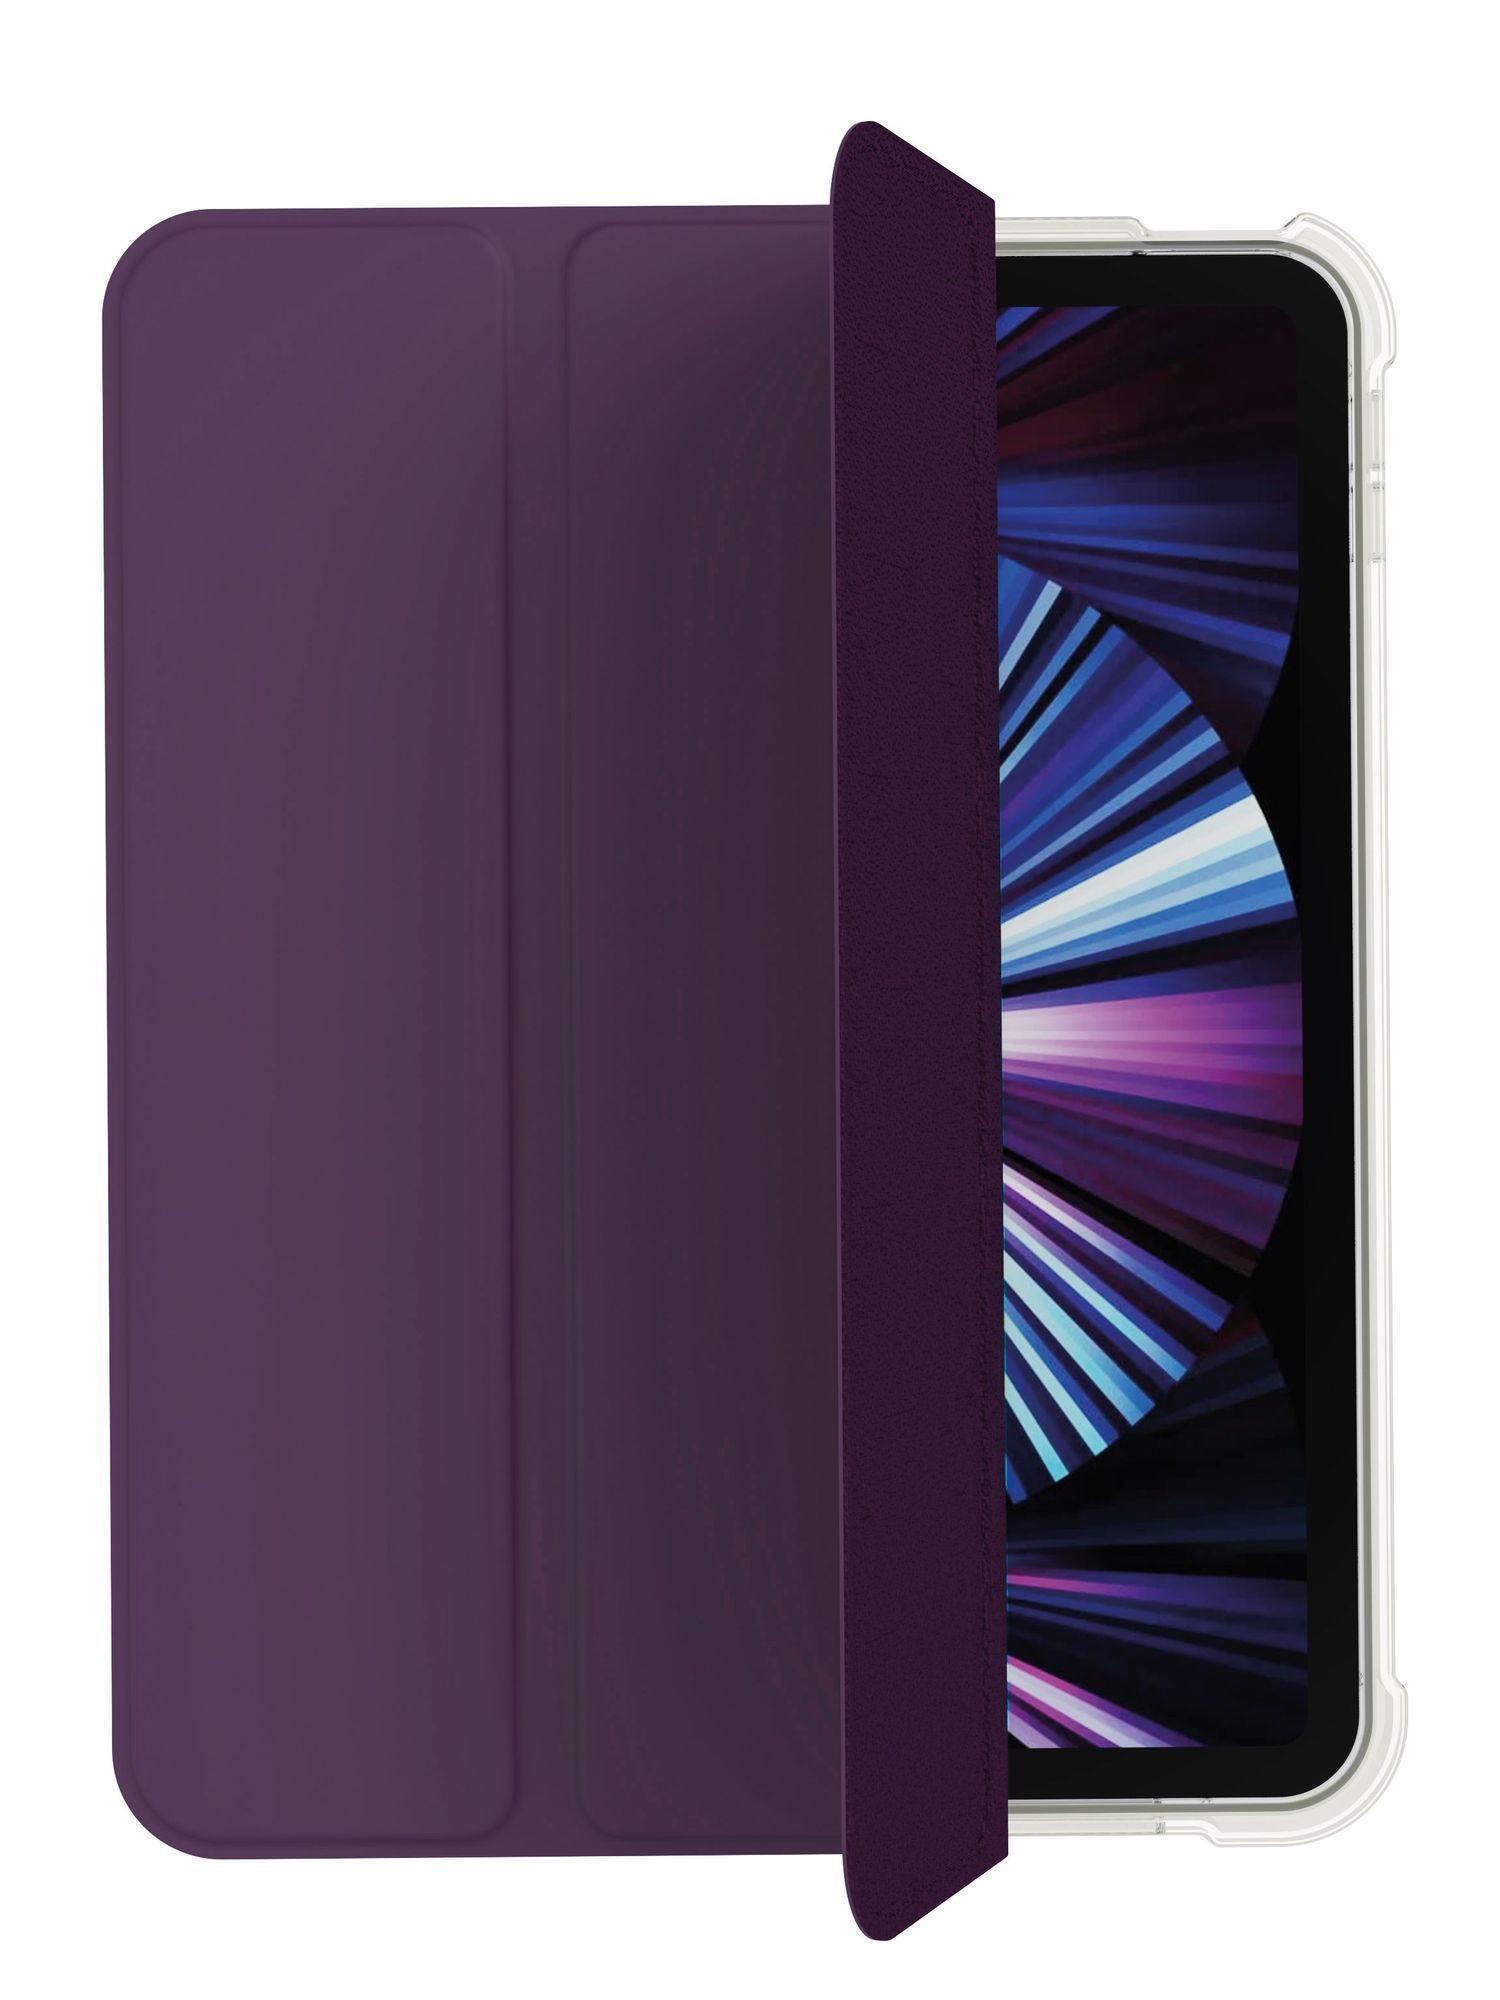 Чехол защитный "vlp" Dual Folio Case для iPad 10, темно-фиолетовый